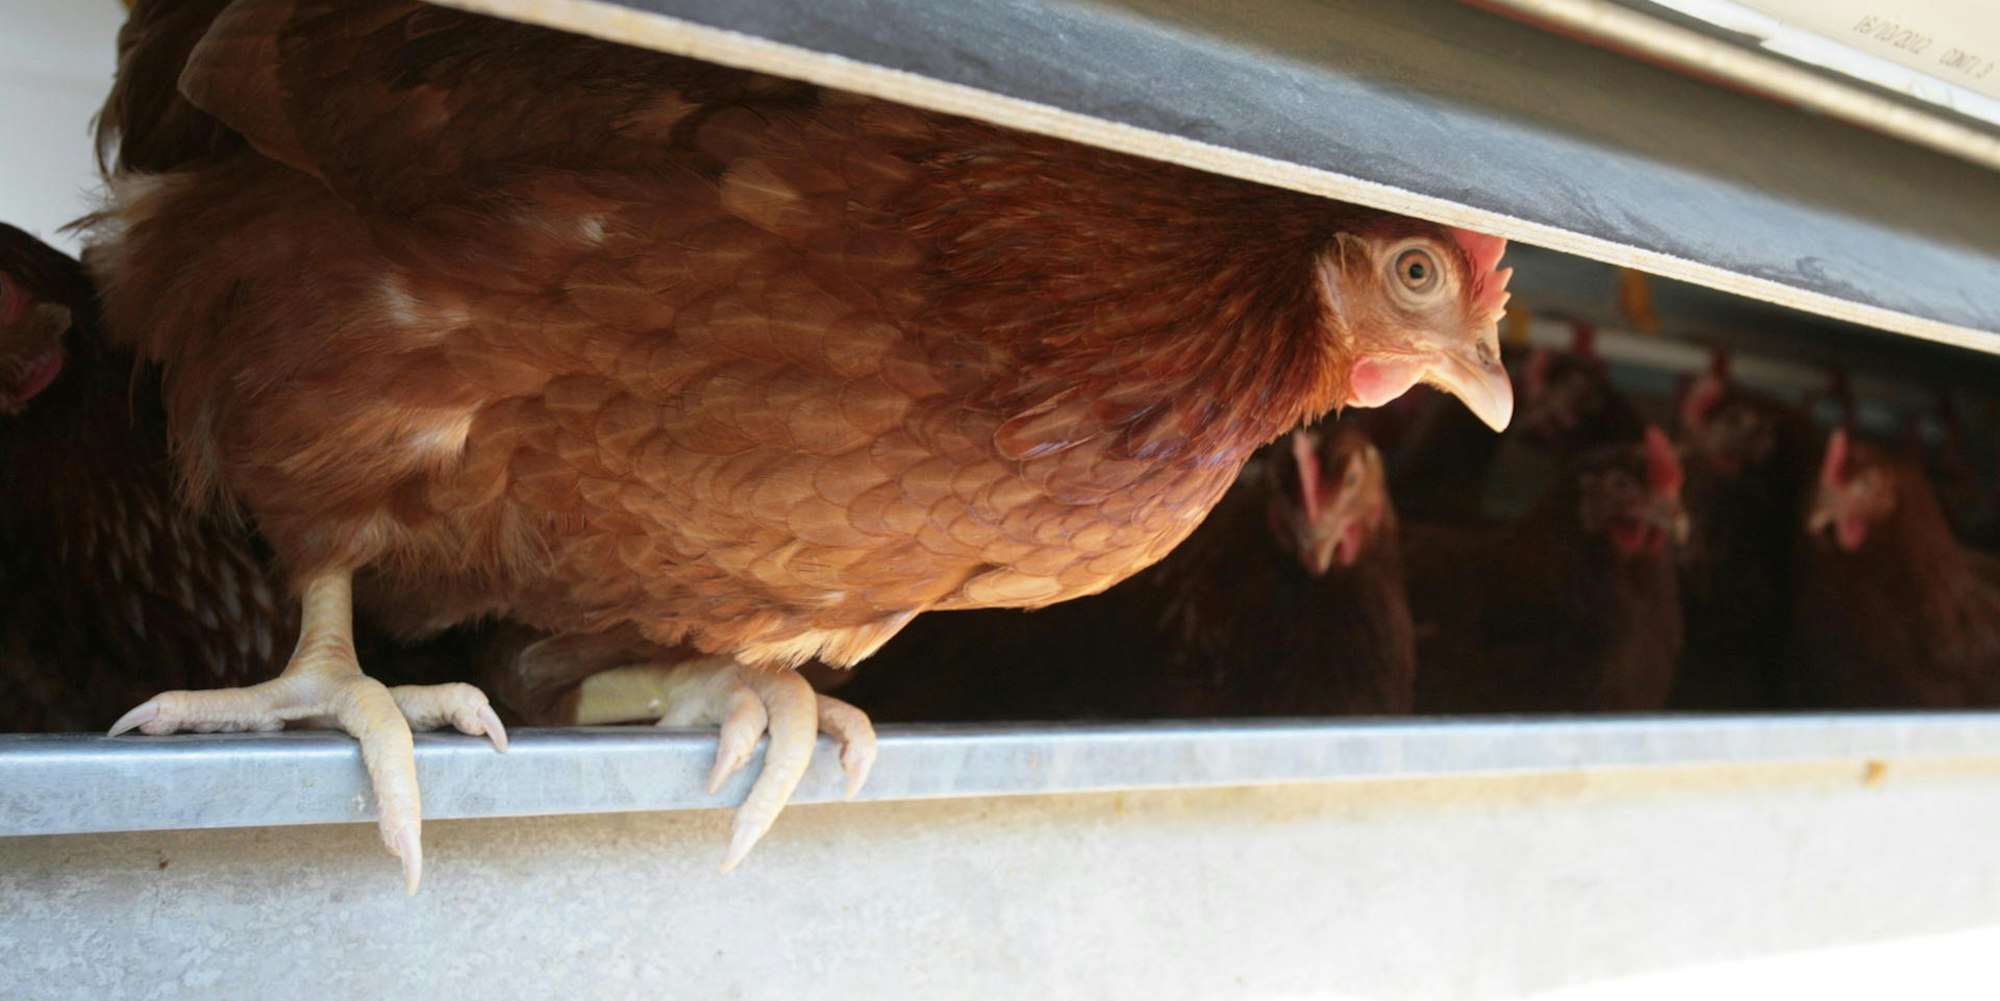 Bereit zum Absprung in heimische Gärten: Private Hühnerhaltung ist schwer im Trend.